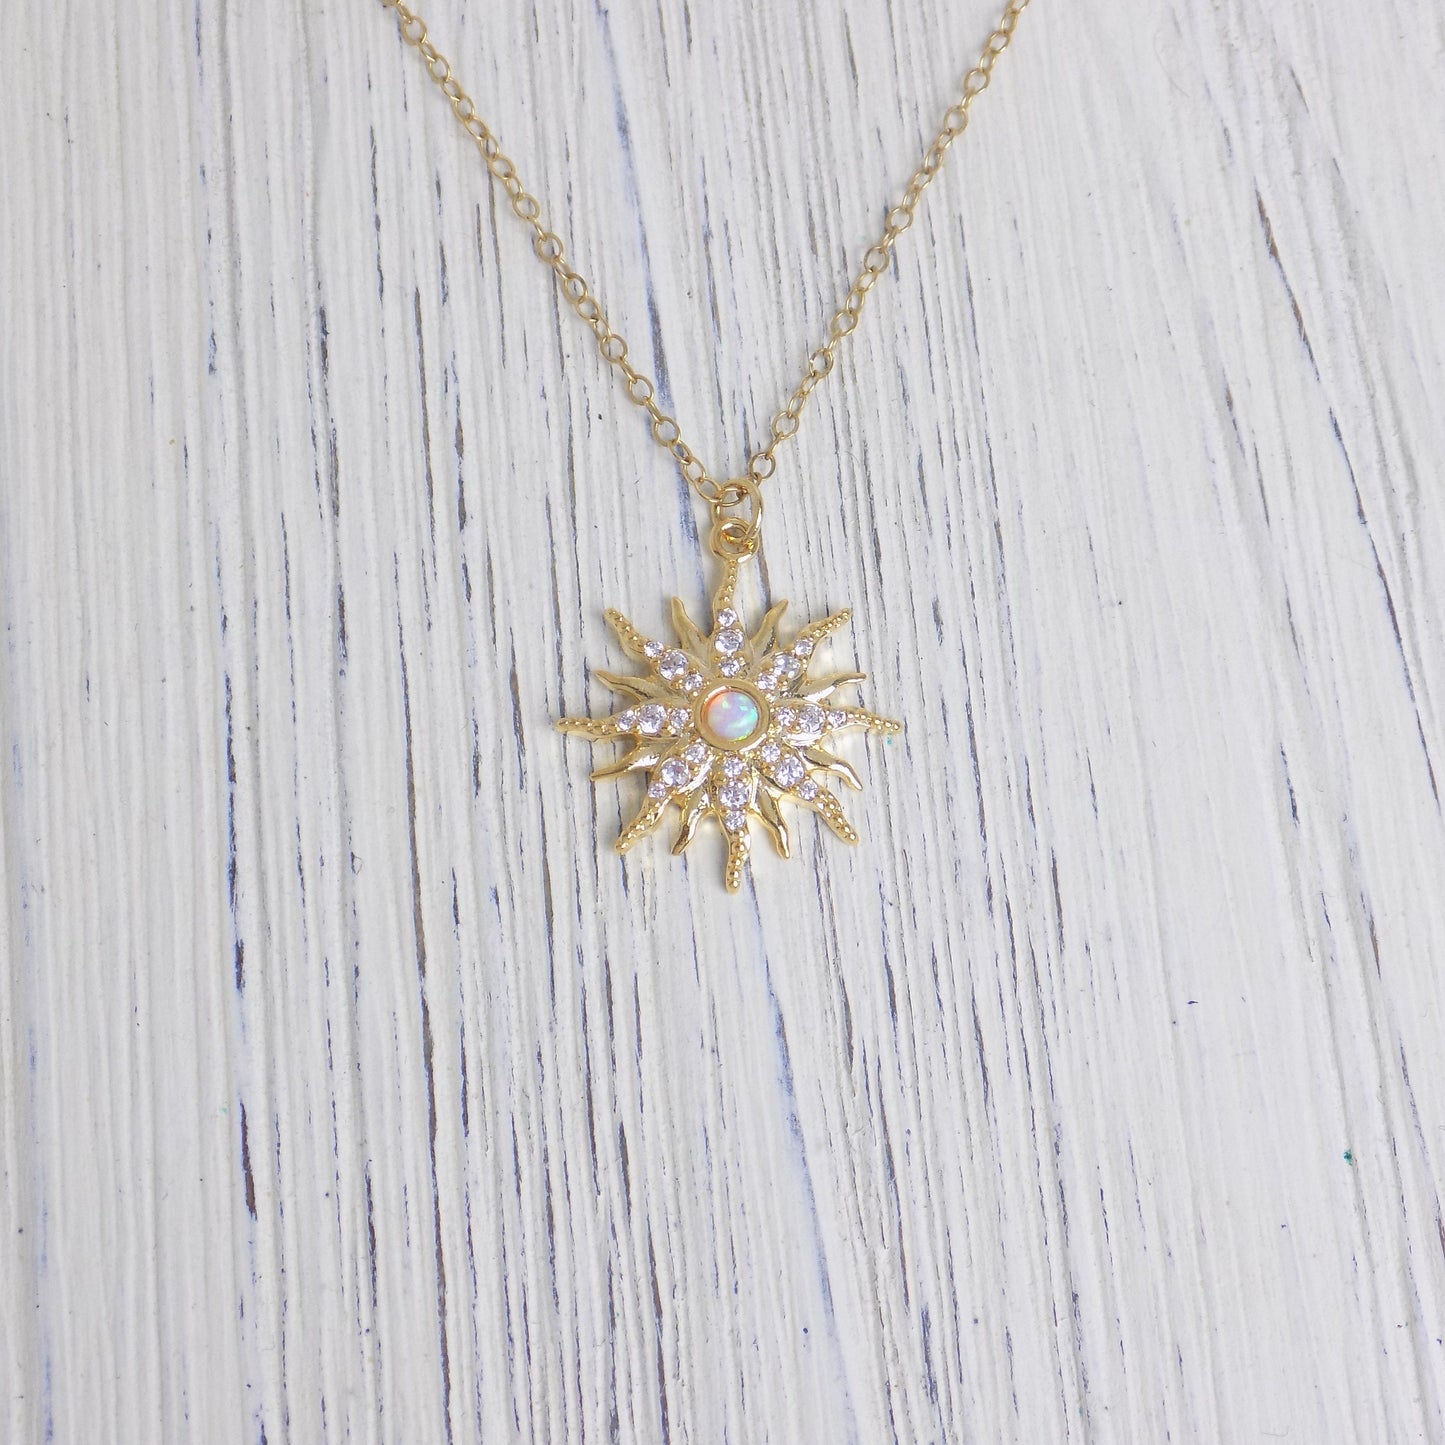 Tiny Opal Necklace Gold - Opal Star Burst Necklace